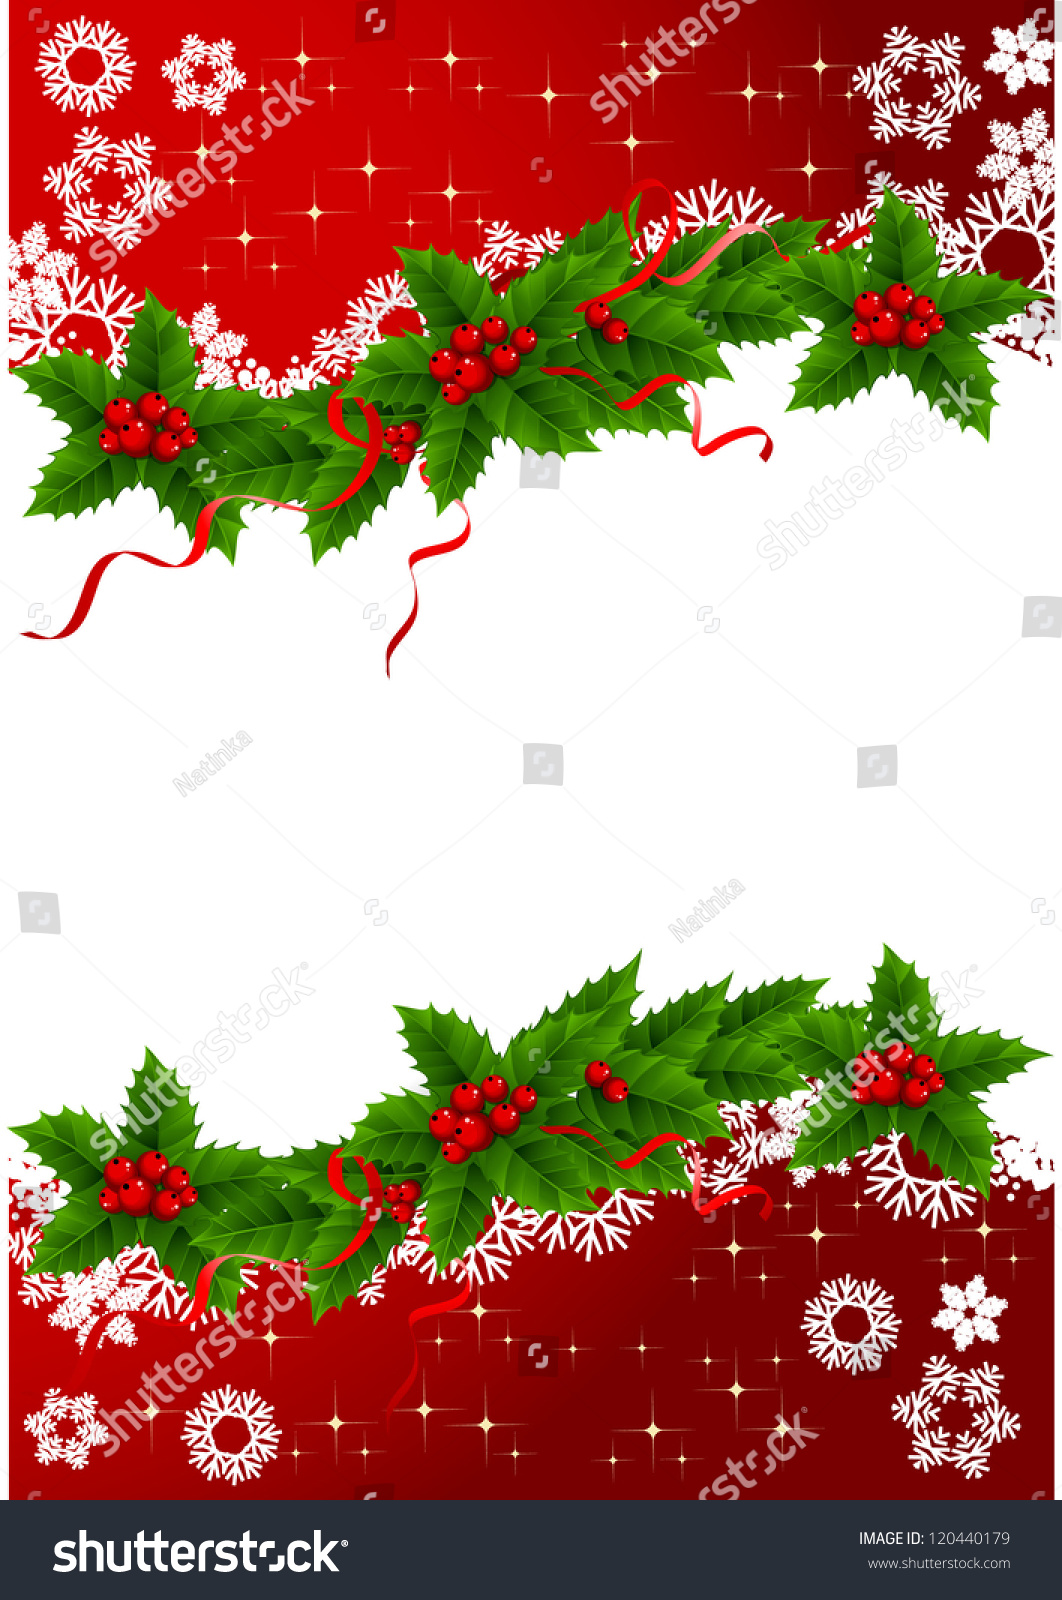 Christmas Background Stock Vector Illustration 120440179 : Shutterstock